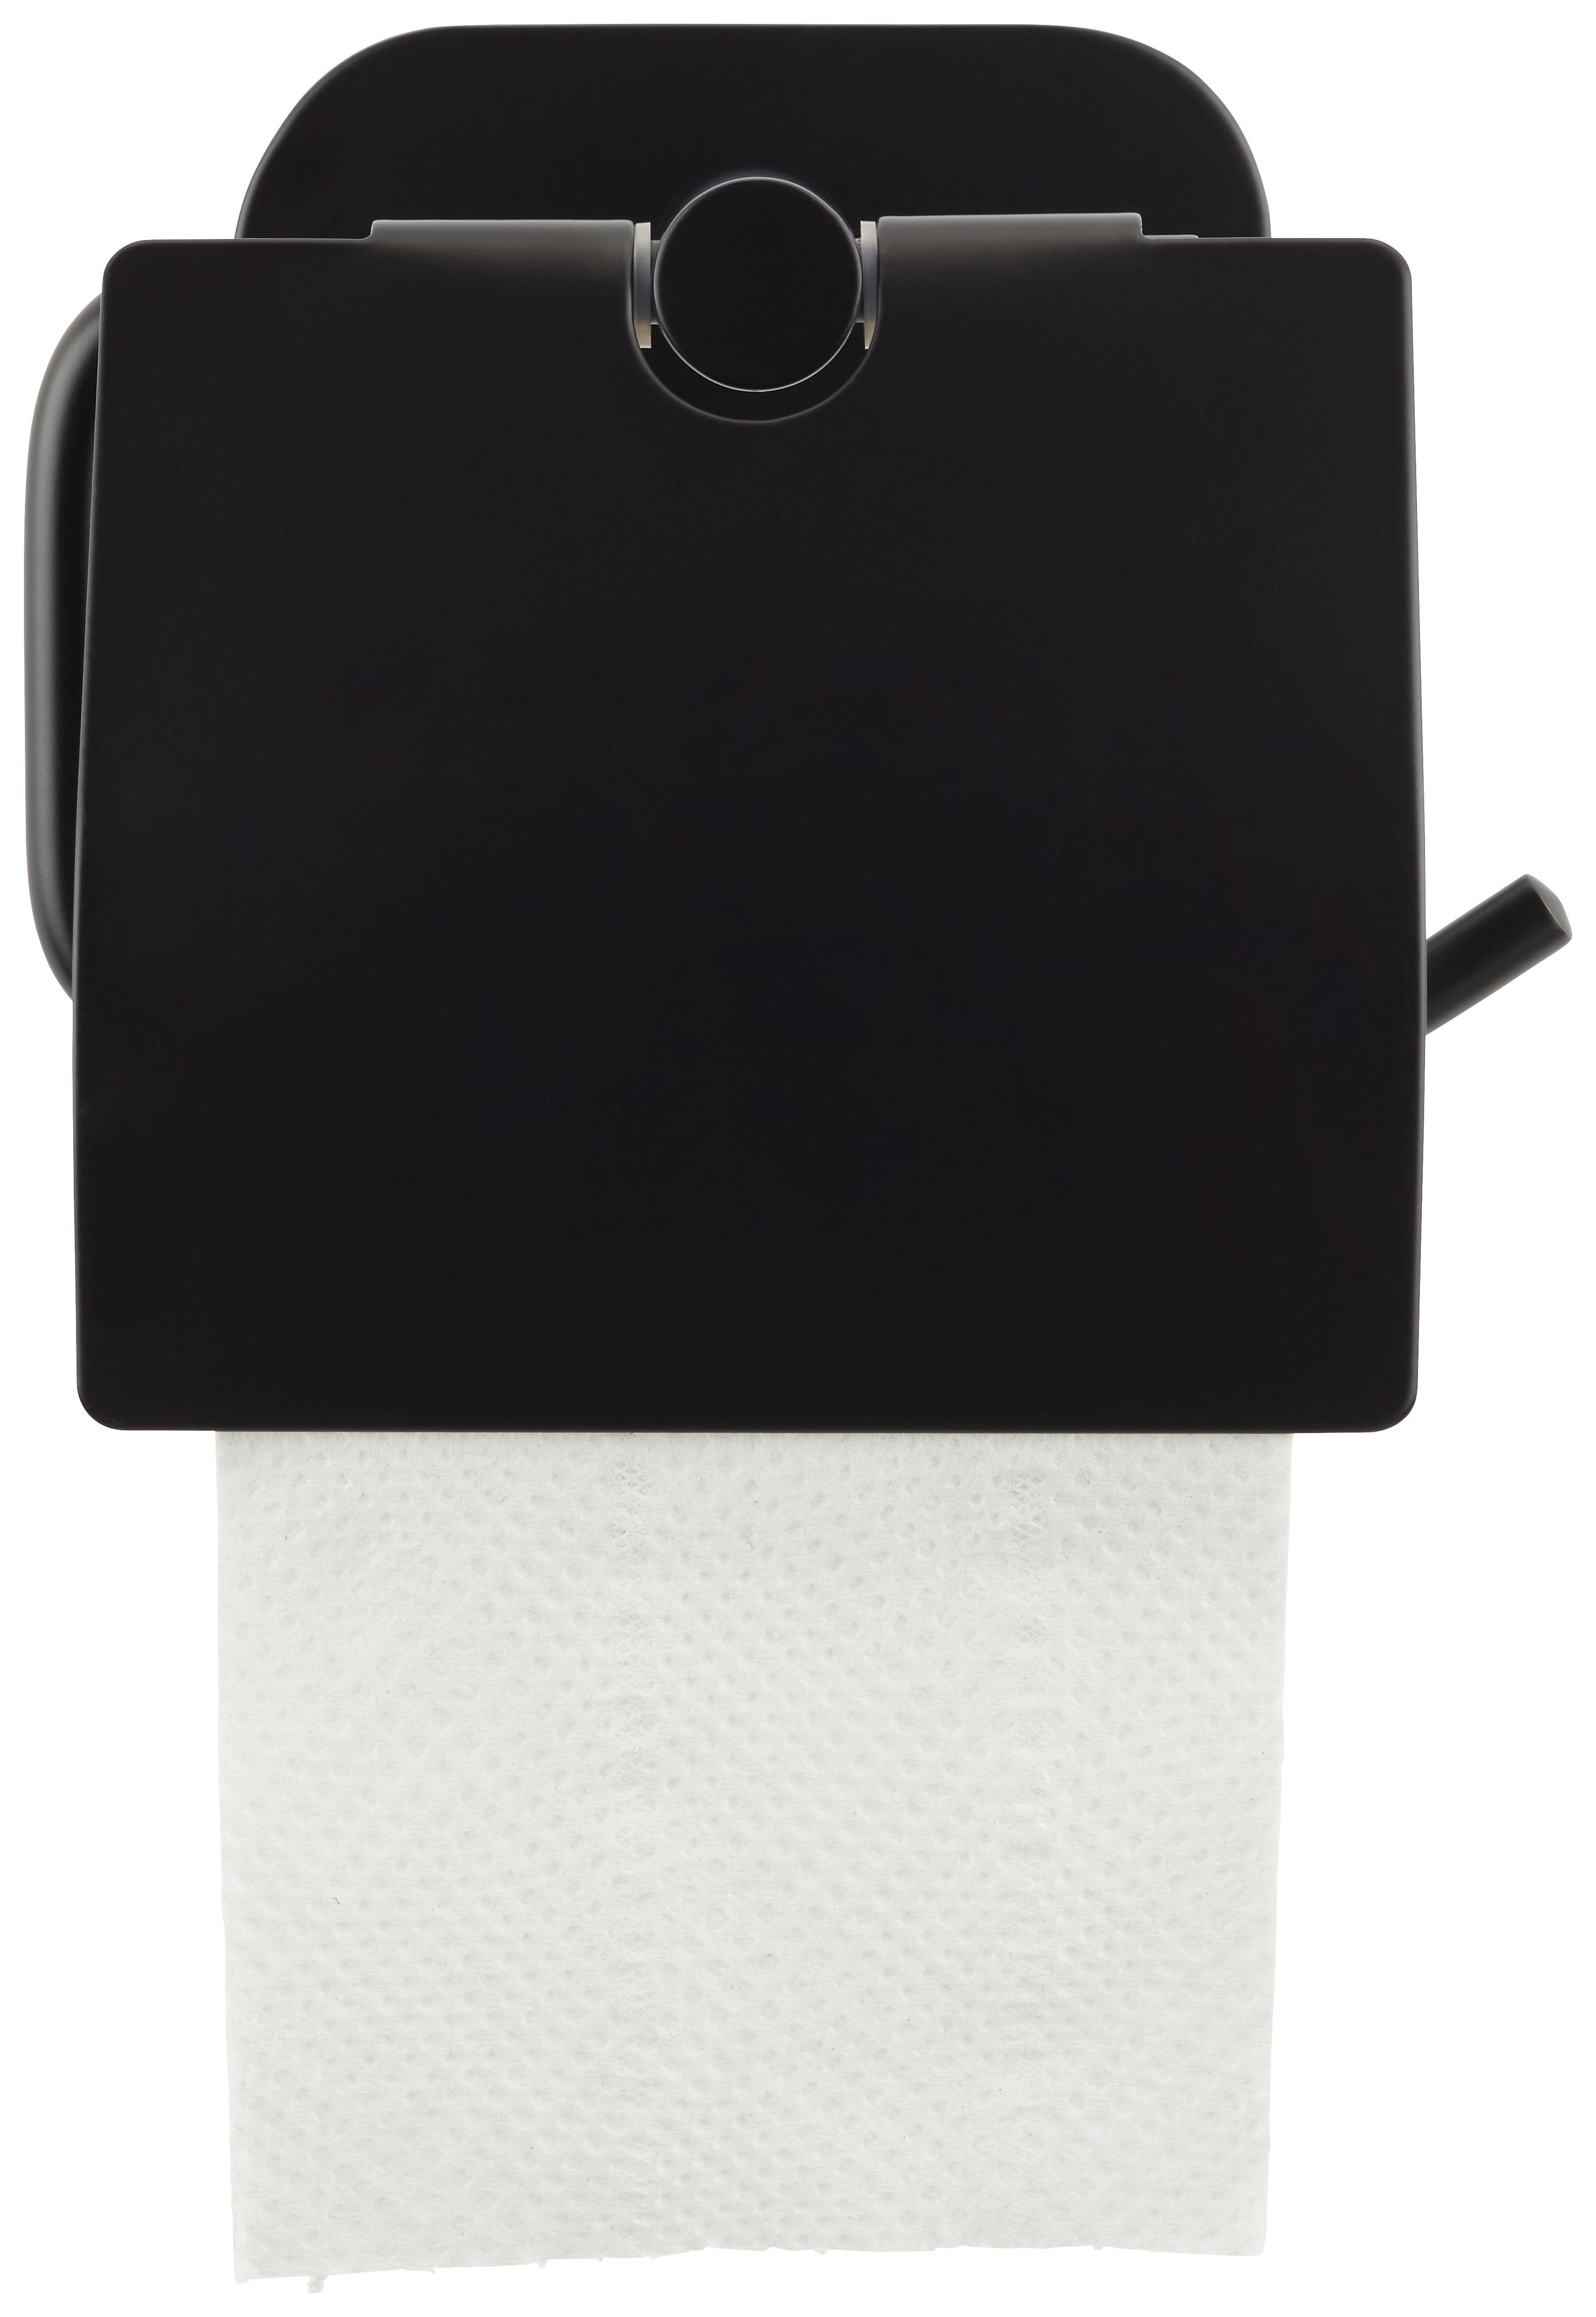 Toilettenpapierhalter aus Metall in Schwarz - Schwarz, Modern, Metall (14/12,5/7cm) - Modern Living